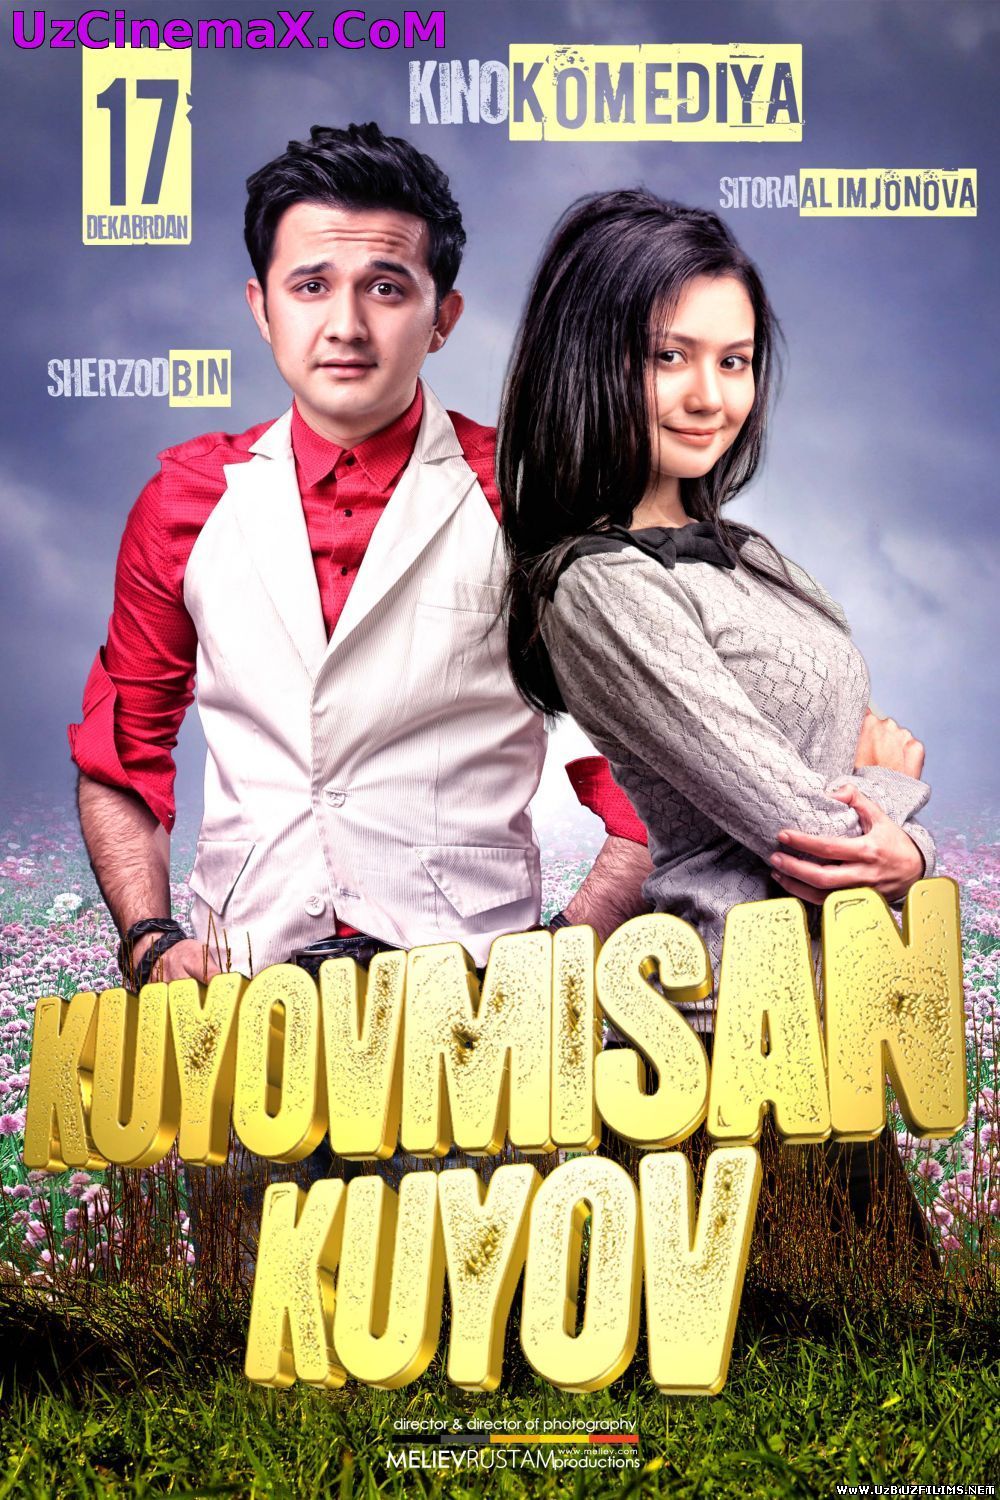 Kuyovmisan kuyov (o'zbek film)